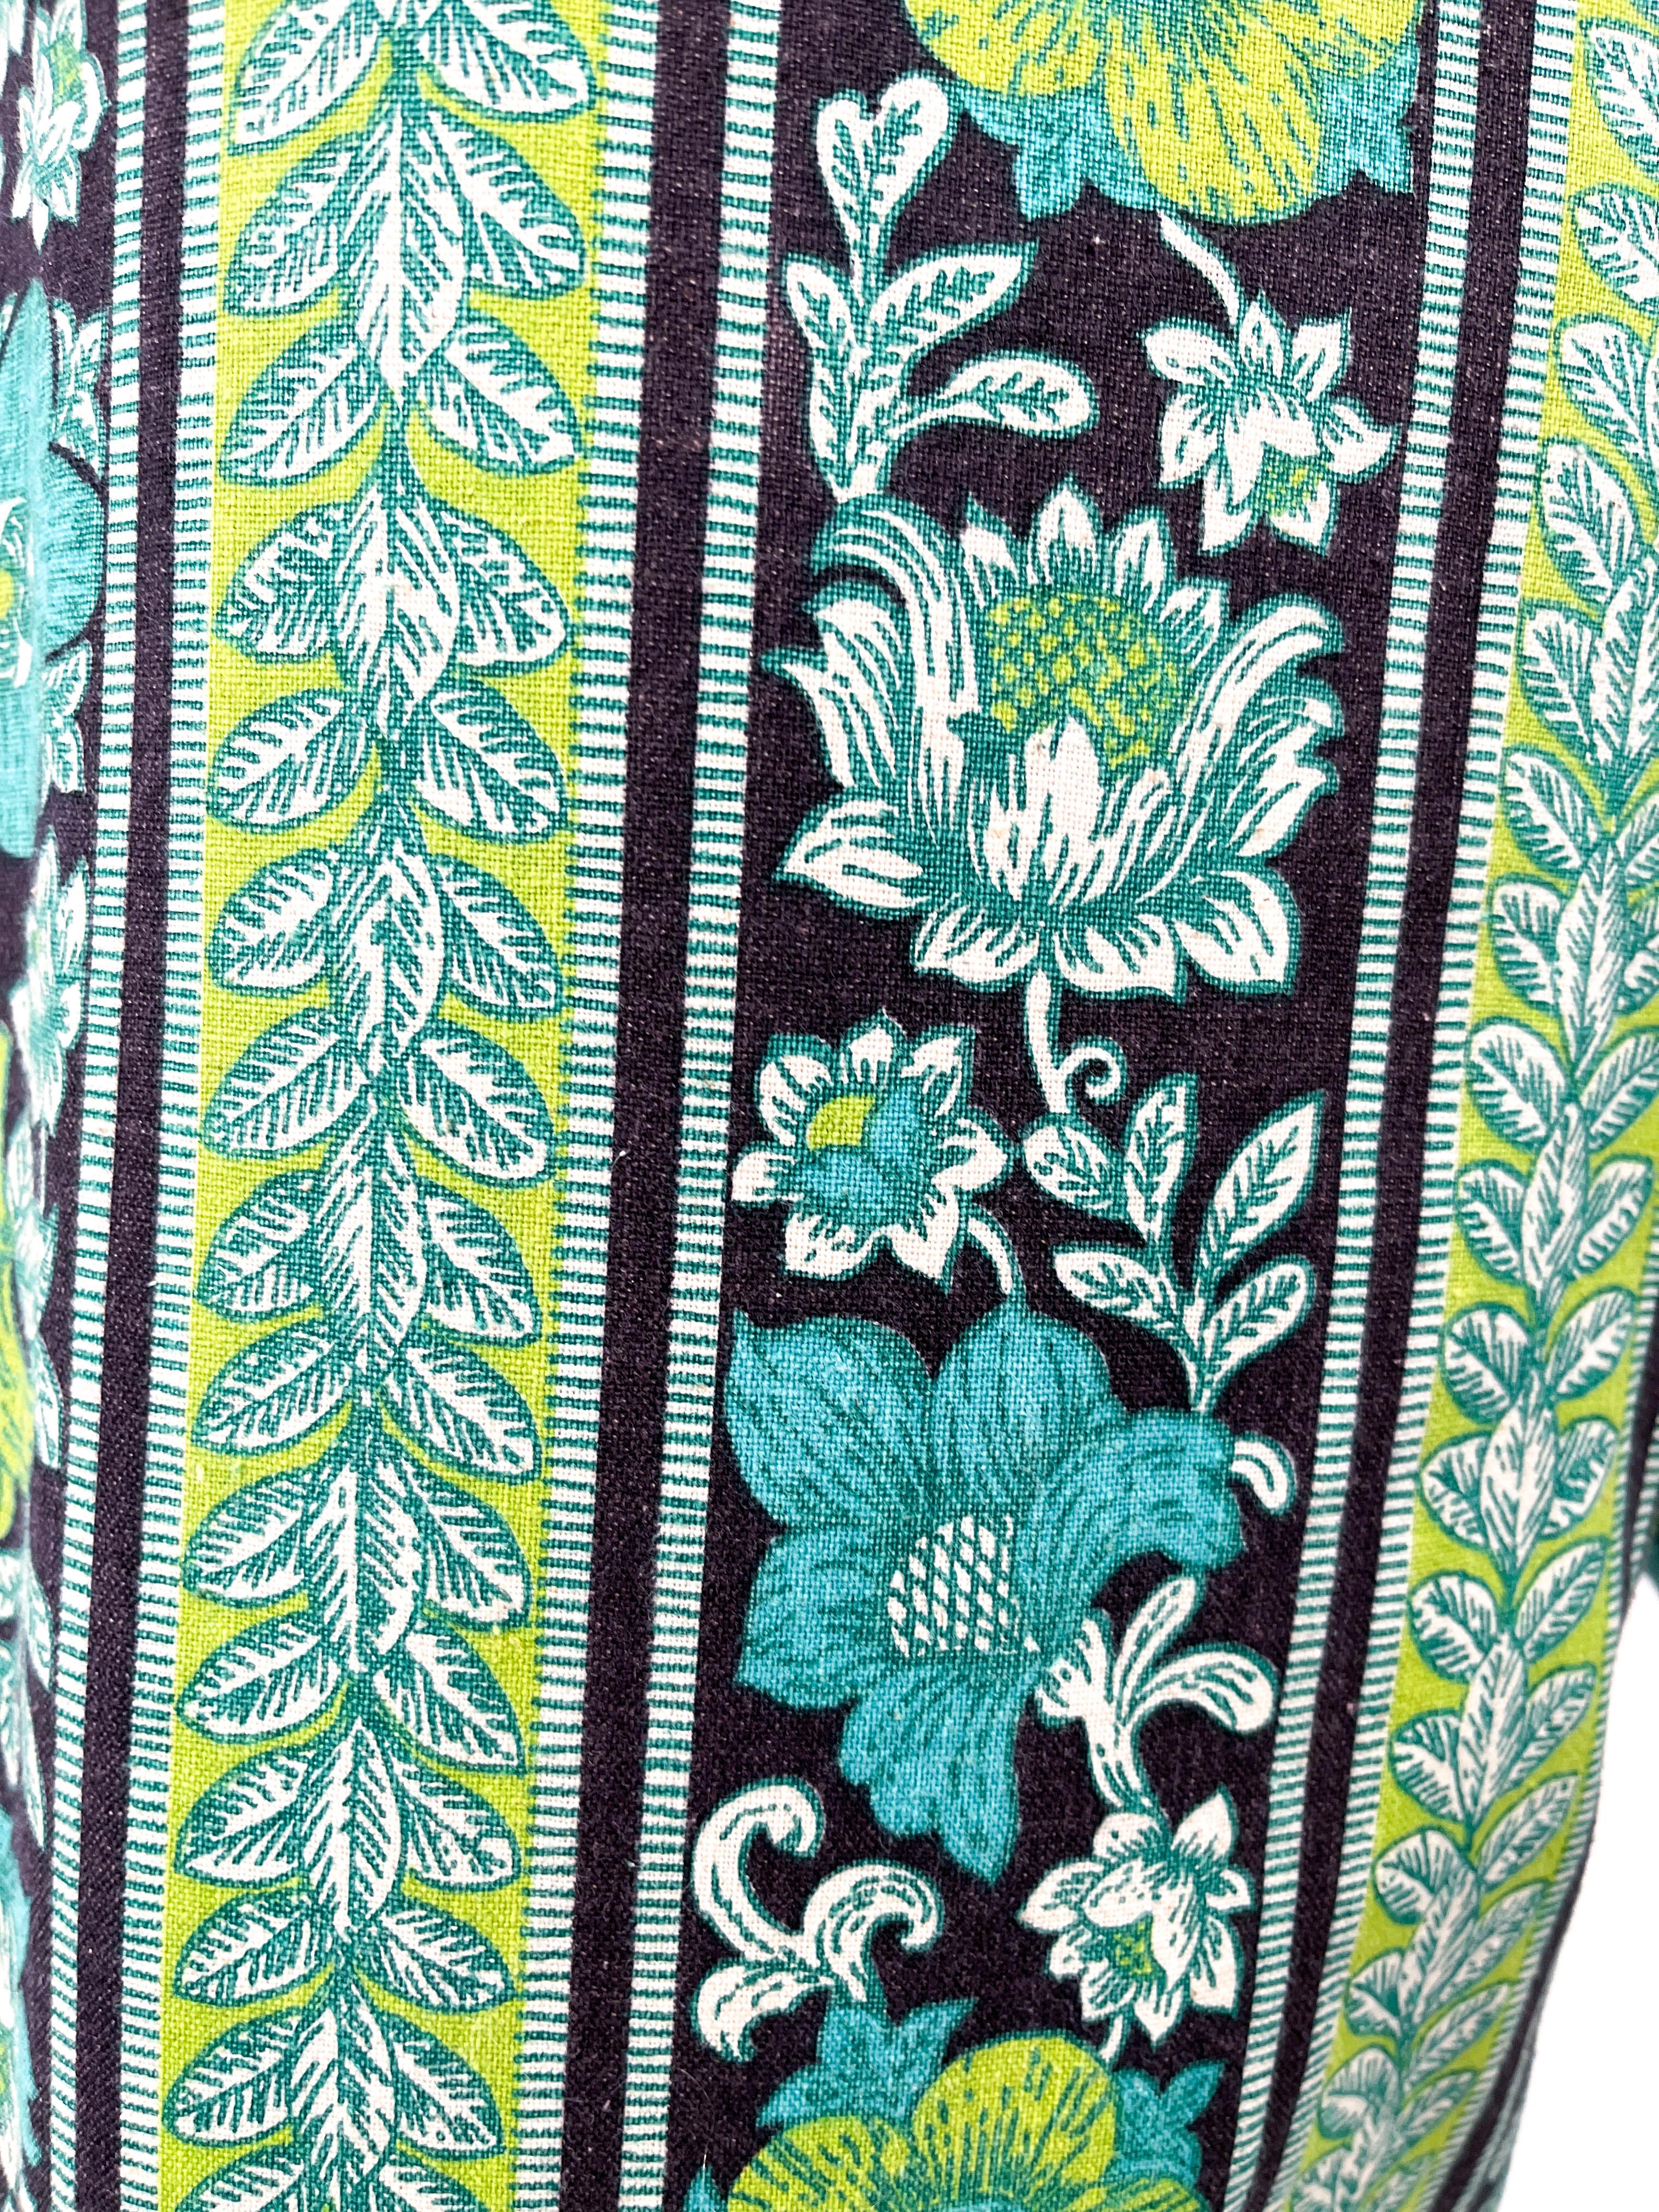 Pantalon évasé et cropped imprimé psychédélique des années 1960, fait sur mesure. L'imprimé floral psychédélique présente des rayures configurées en vert néon, sarcelle, noir et blanc. La taille basse est dotée de passants de ceinture assortis et